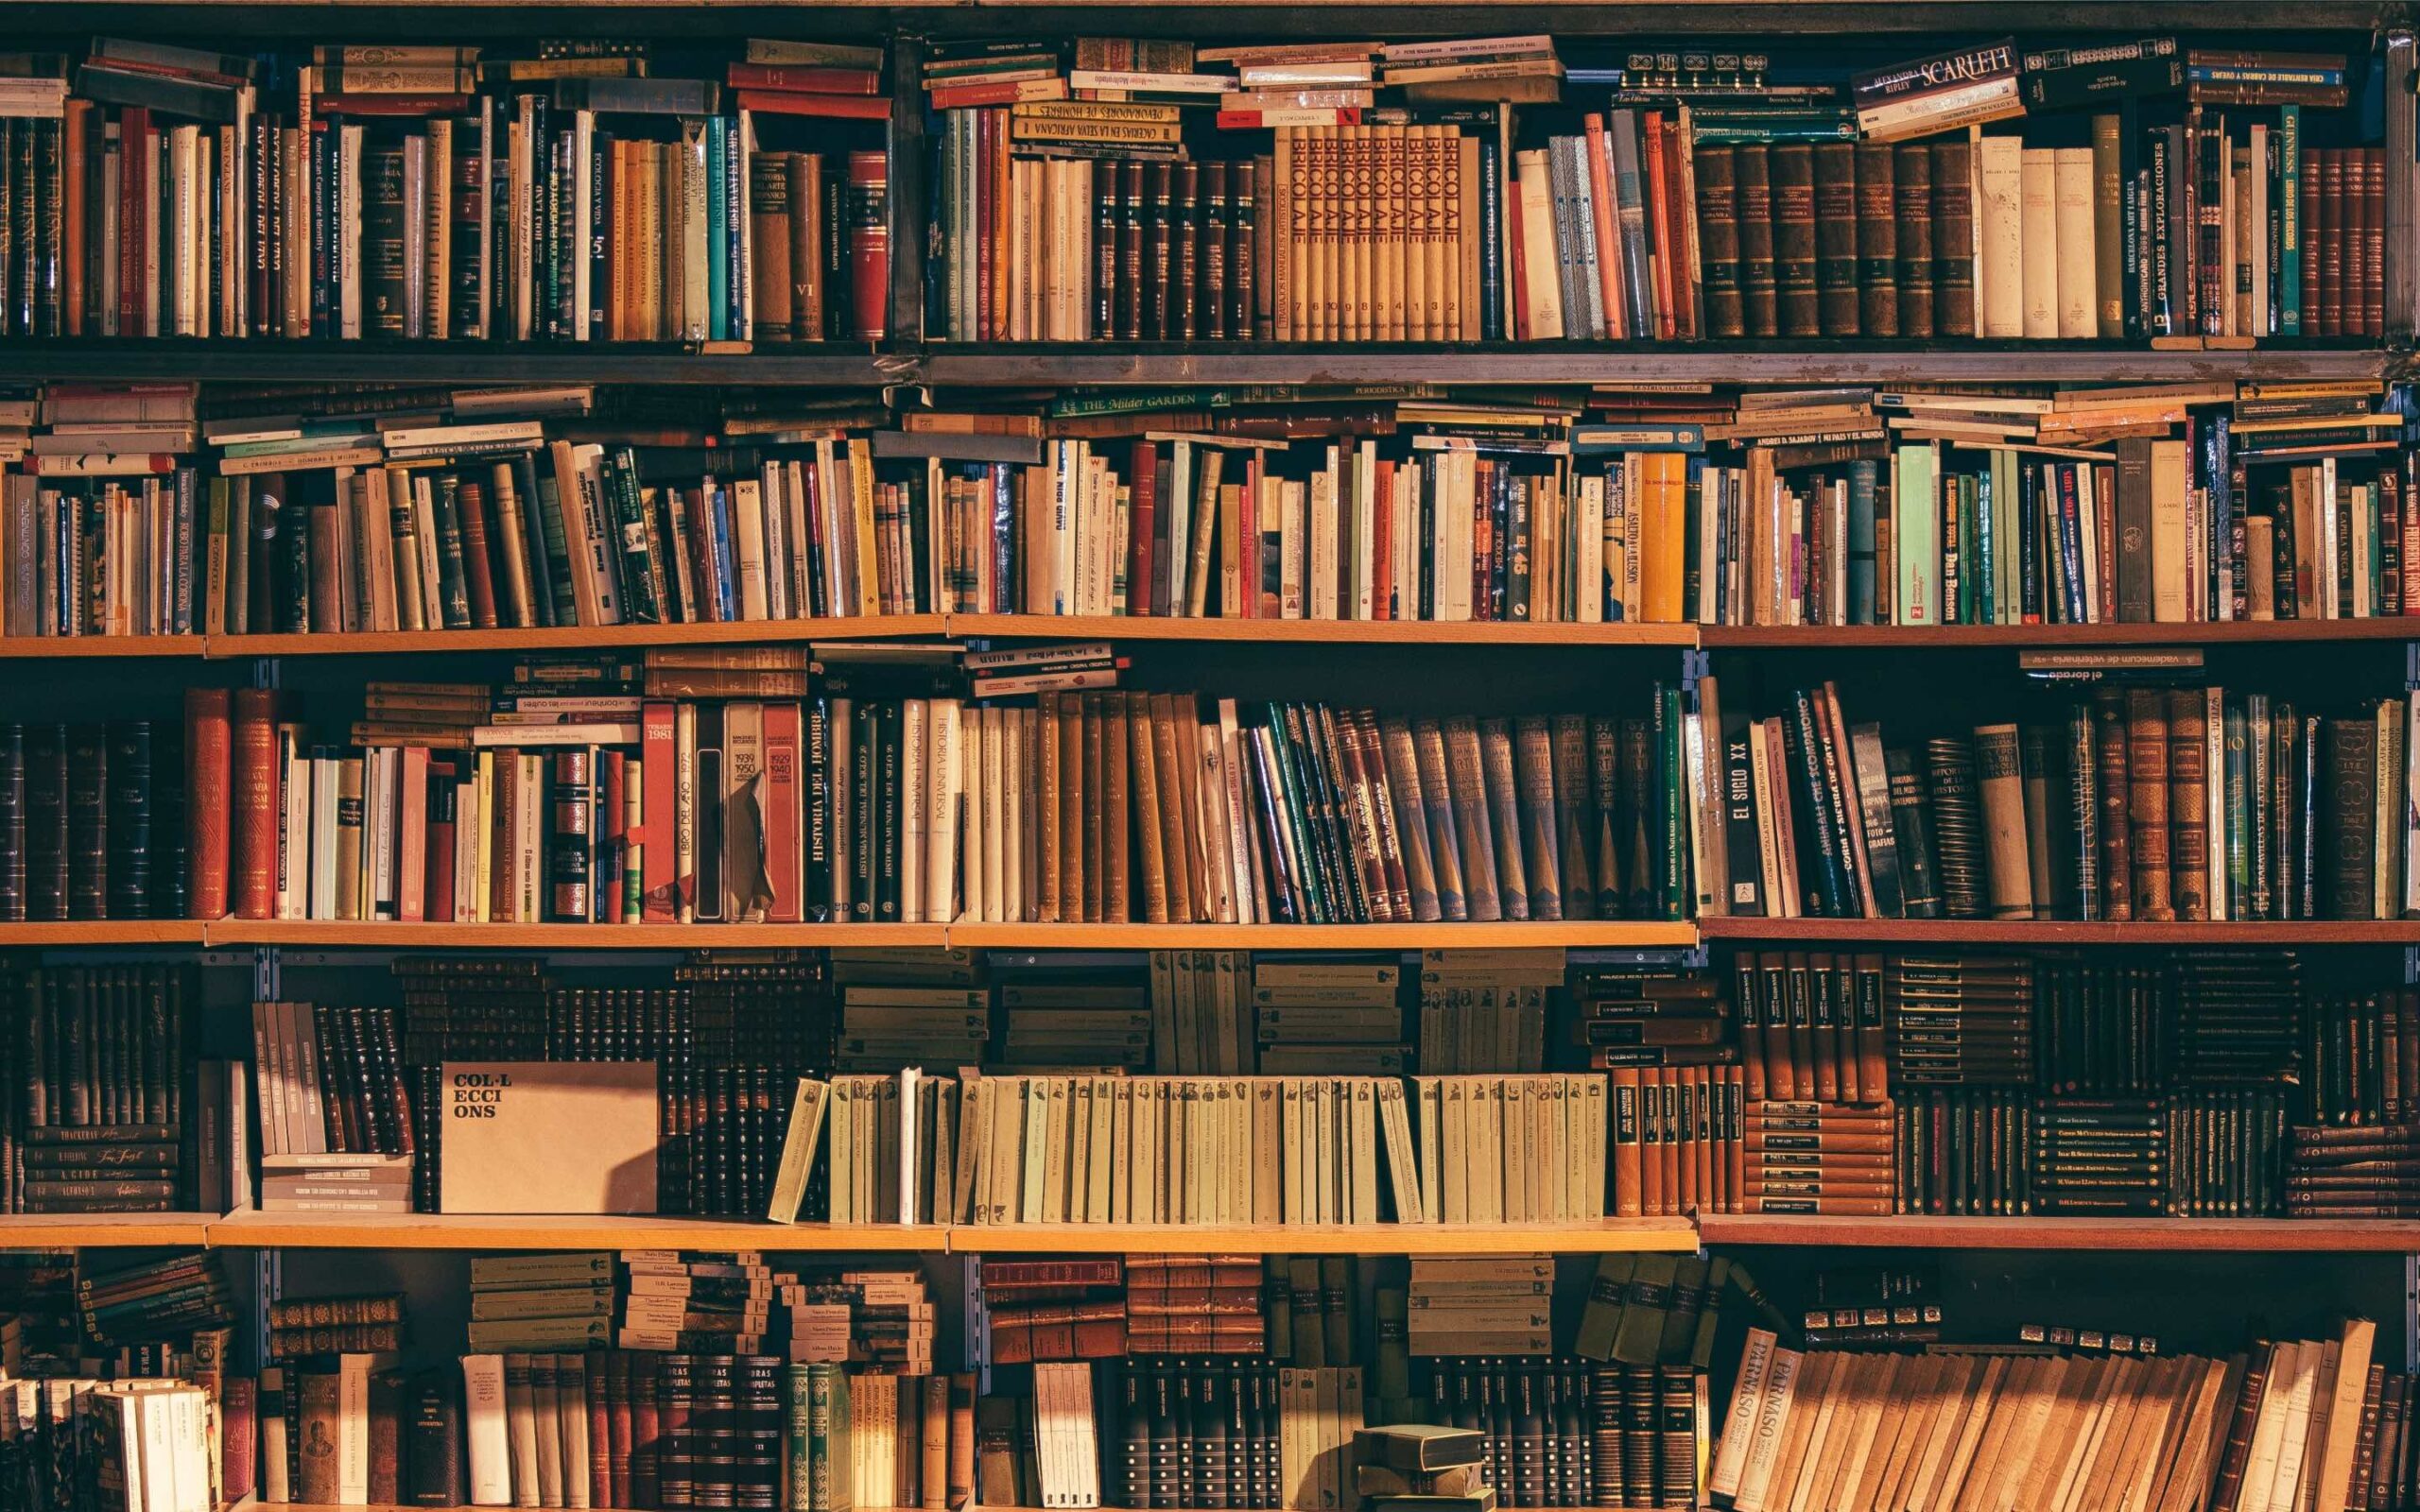 A book shelf